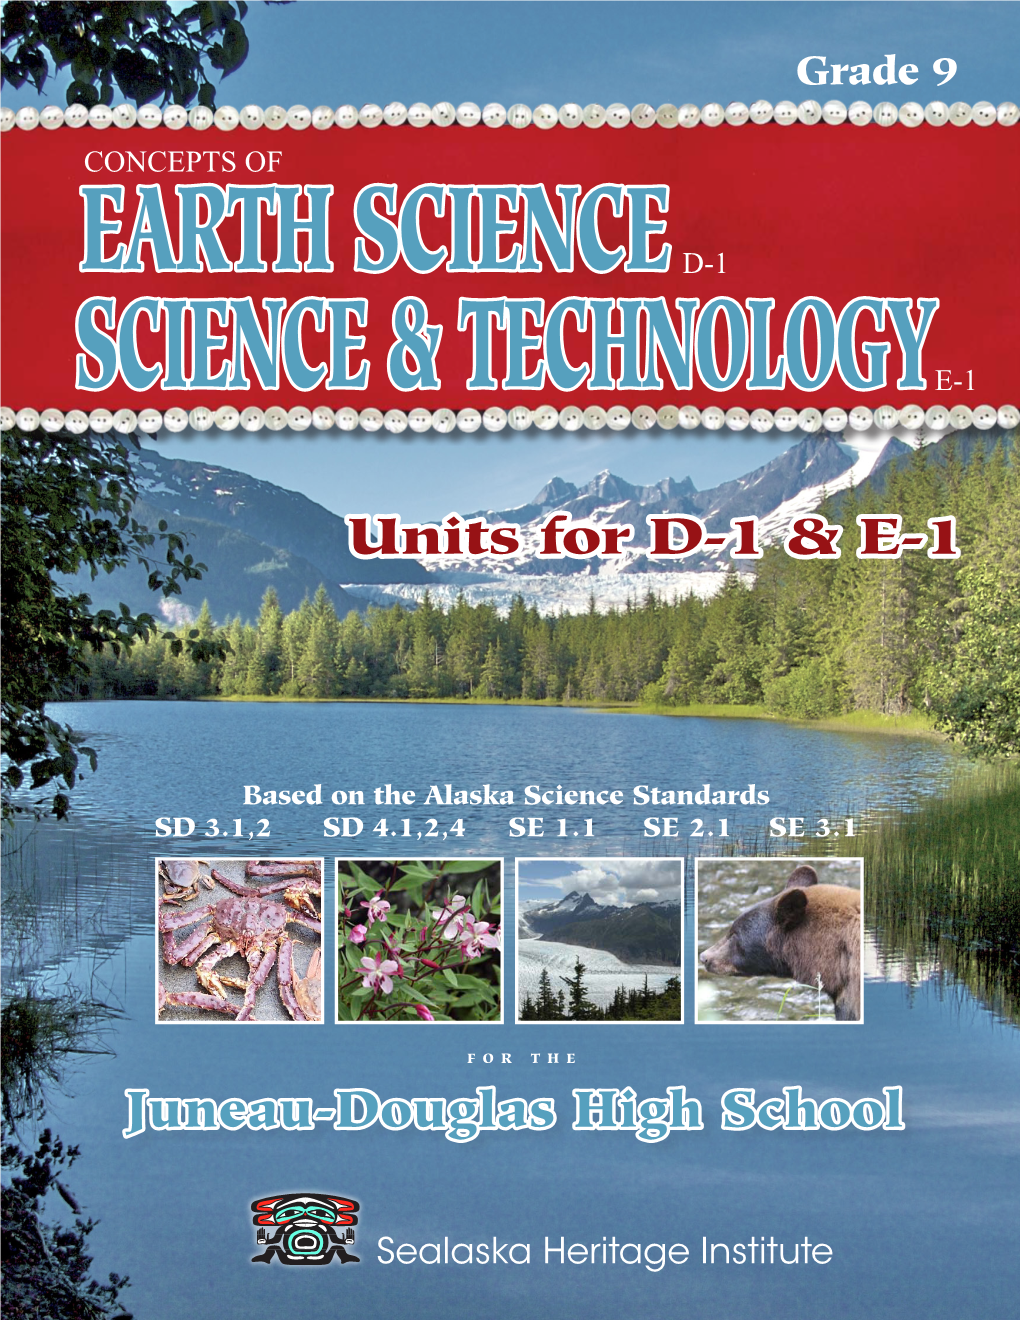 Units for D-1 & E-1 Juneau-Douglas High School